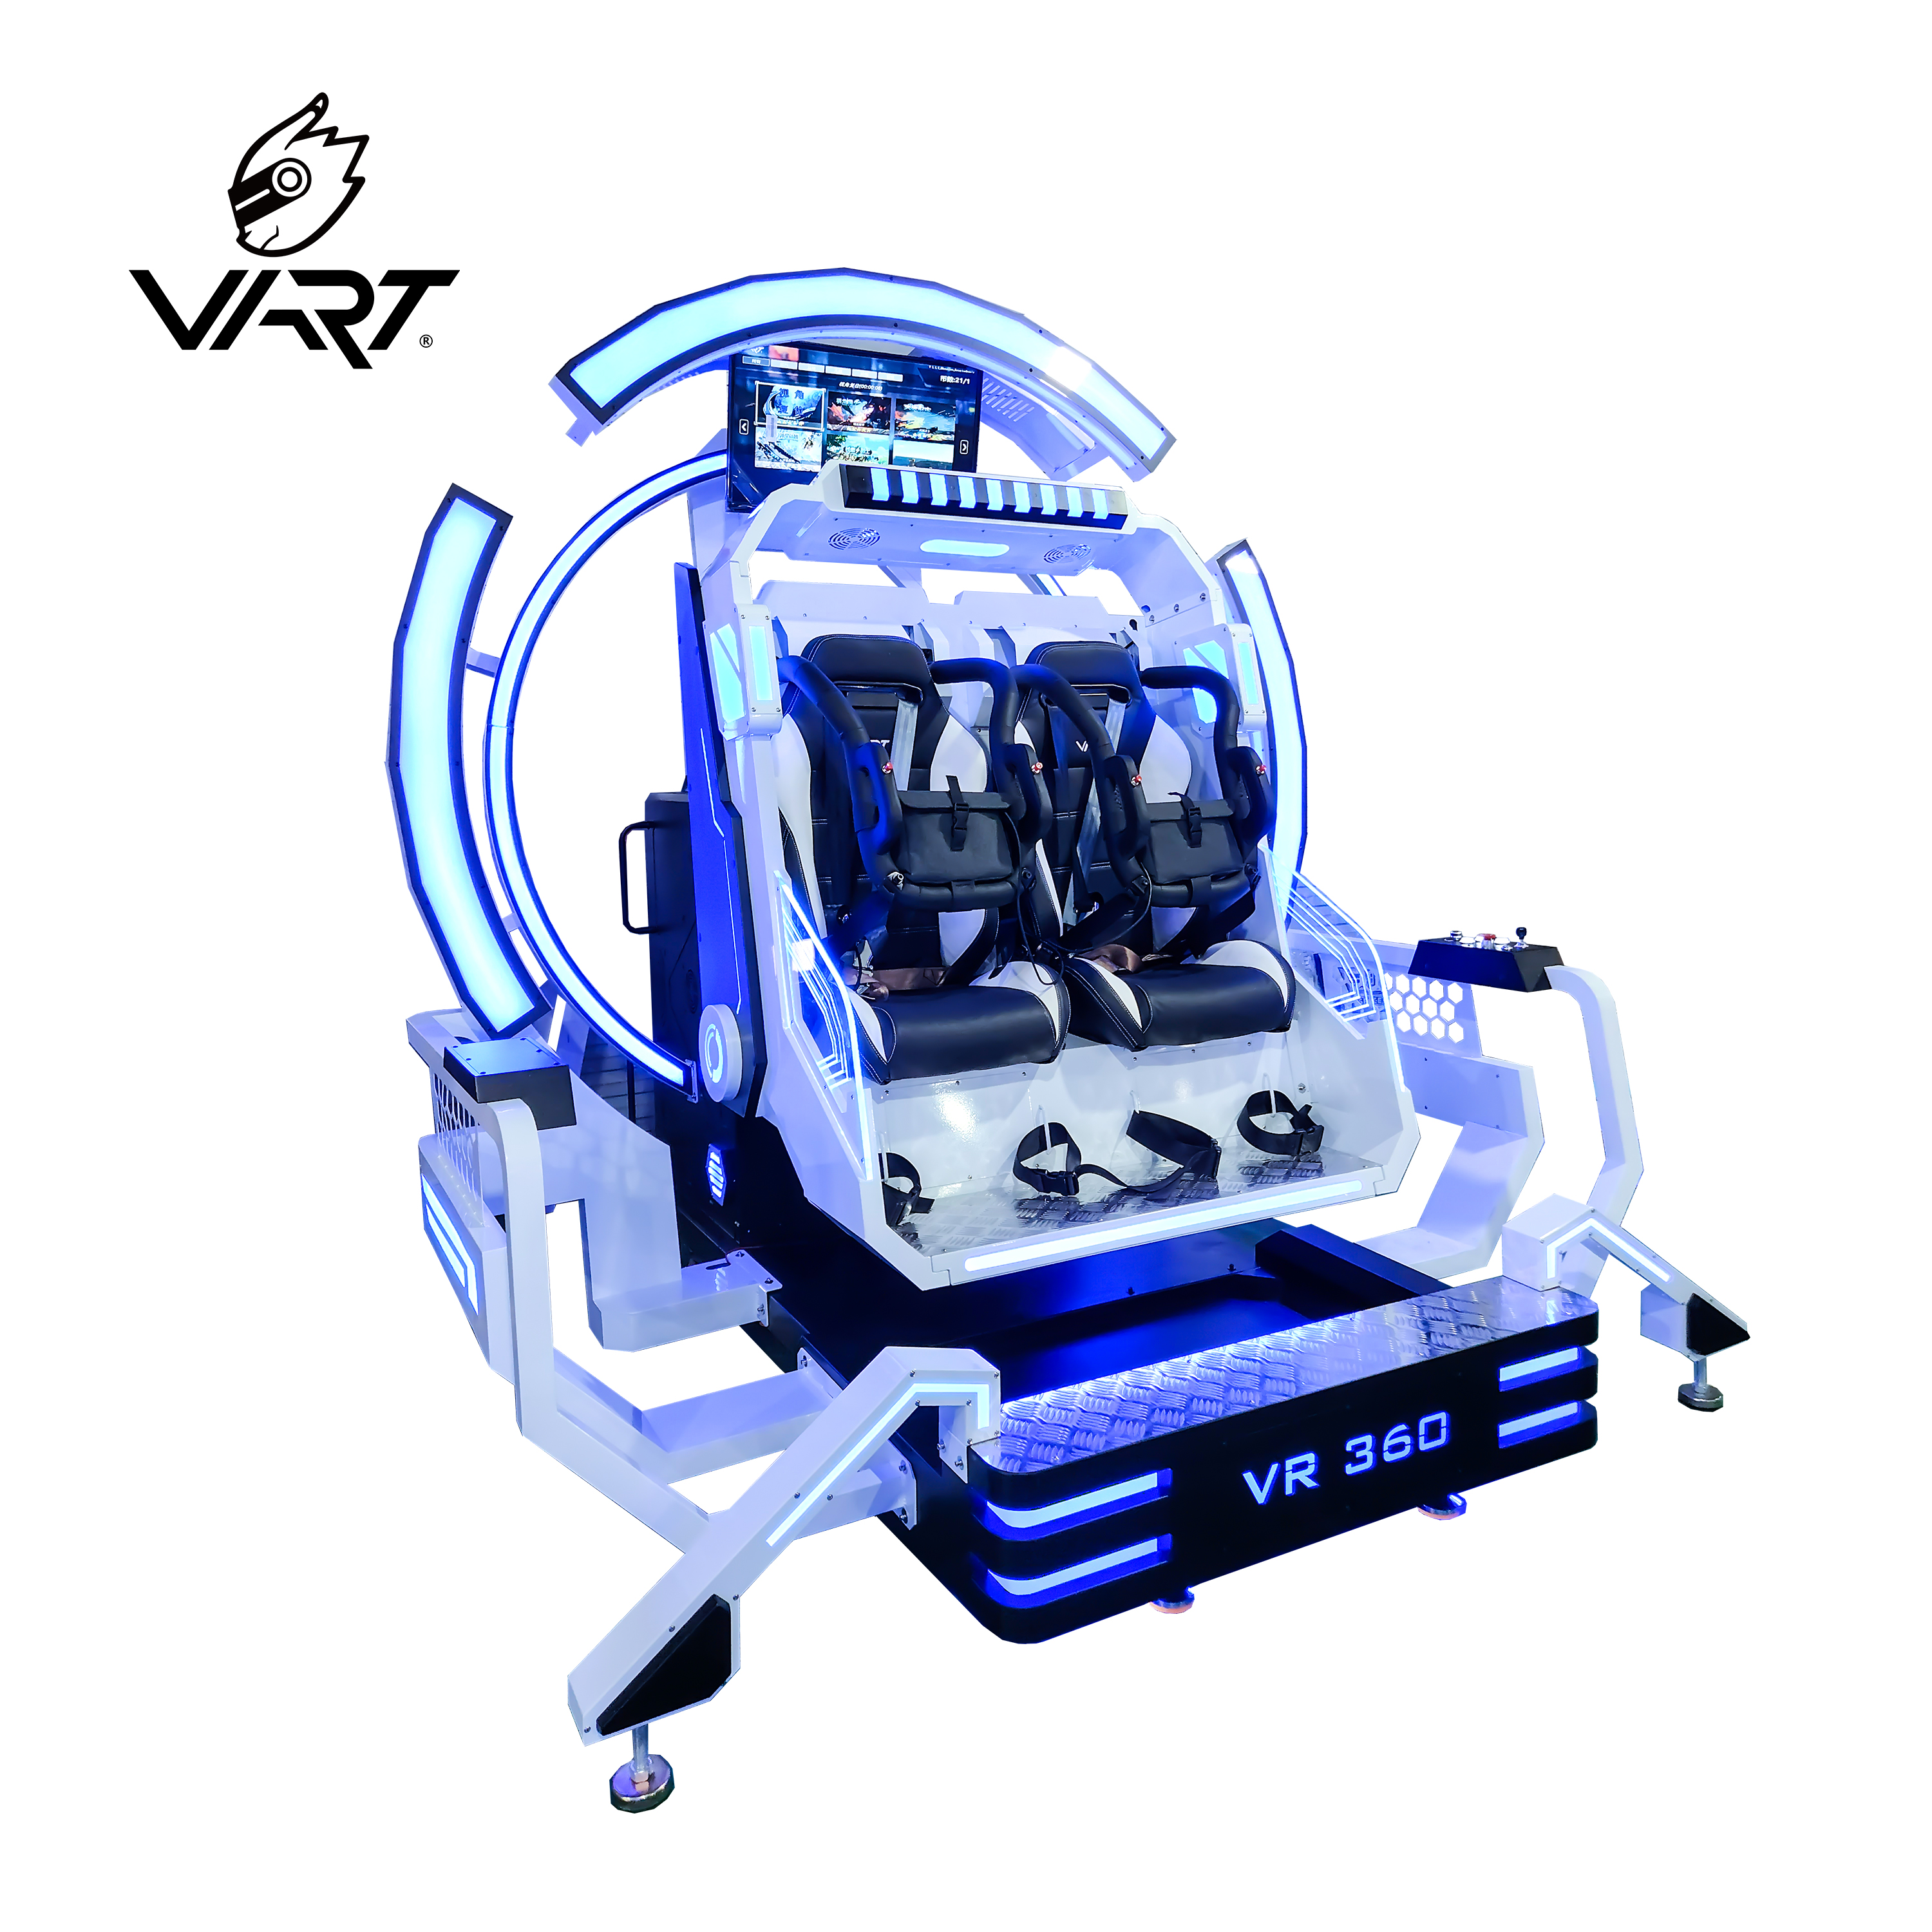 Mtengo wotsika wa 9d Vr 360 Degree Headtracking Roller Coaster Simulator Plus Virtual Reality Vibration 9d Cinema Chithunzi Chowonetsedwa